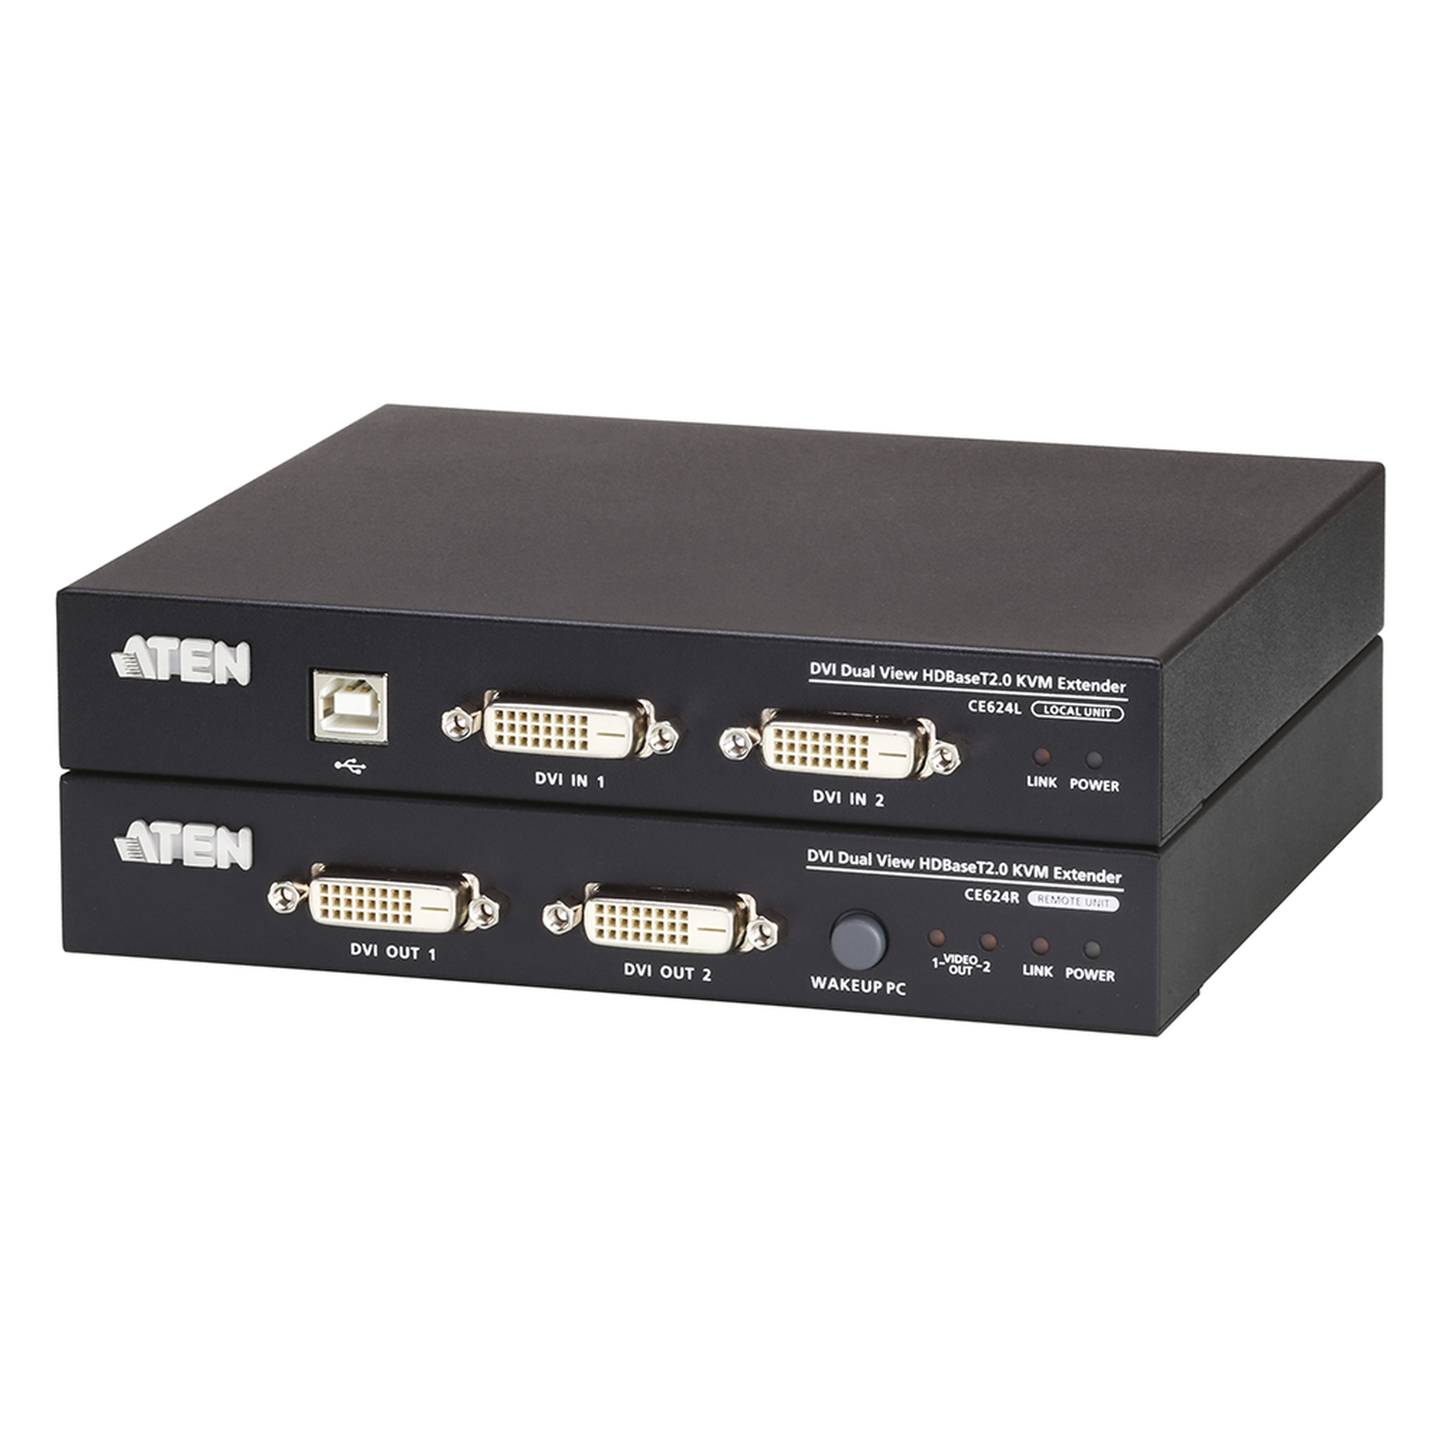 Kit Extensor HDMI para distancias de 70 metros / Resolución 4K x 2K@ 30 Hz/ Cat 6, 6a y 7 / IPCOLOR / CERO LATENCIA / SIN COMPRIMIR / Uso 24/7 / Puerto S/PDIF / Soporta ARC / Salida Loop / Alimente solo el Tx (PoC) / Control IR